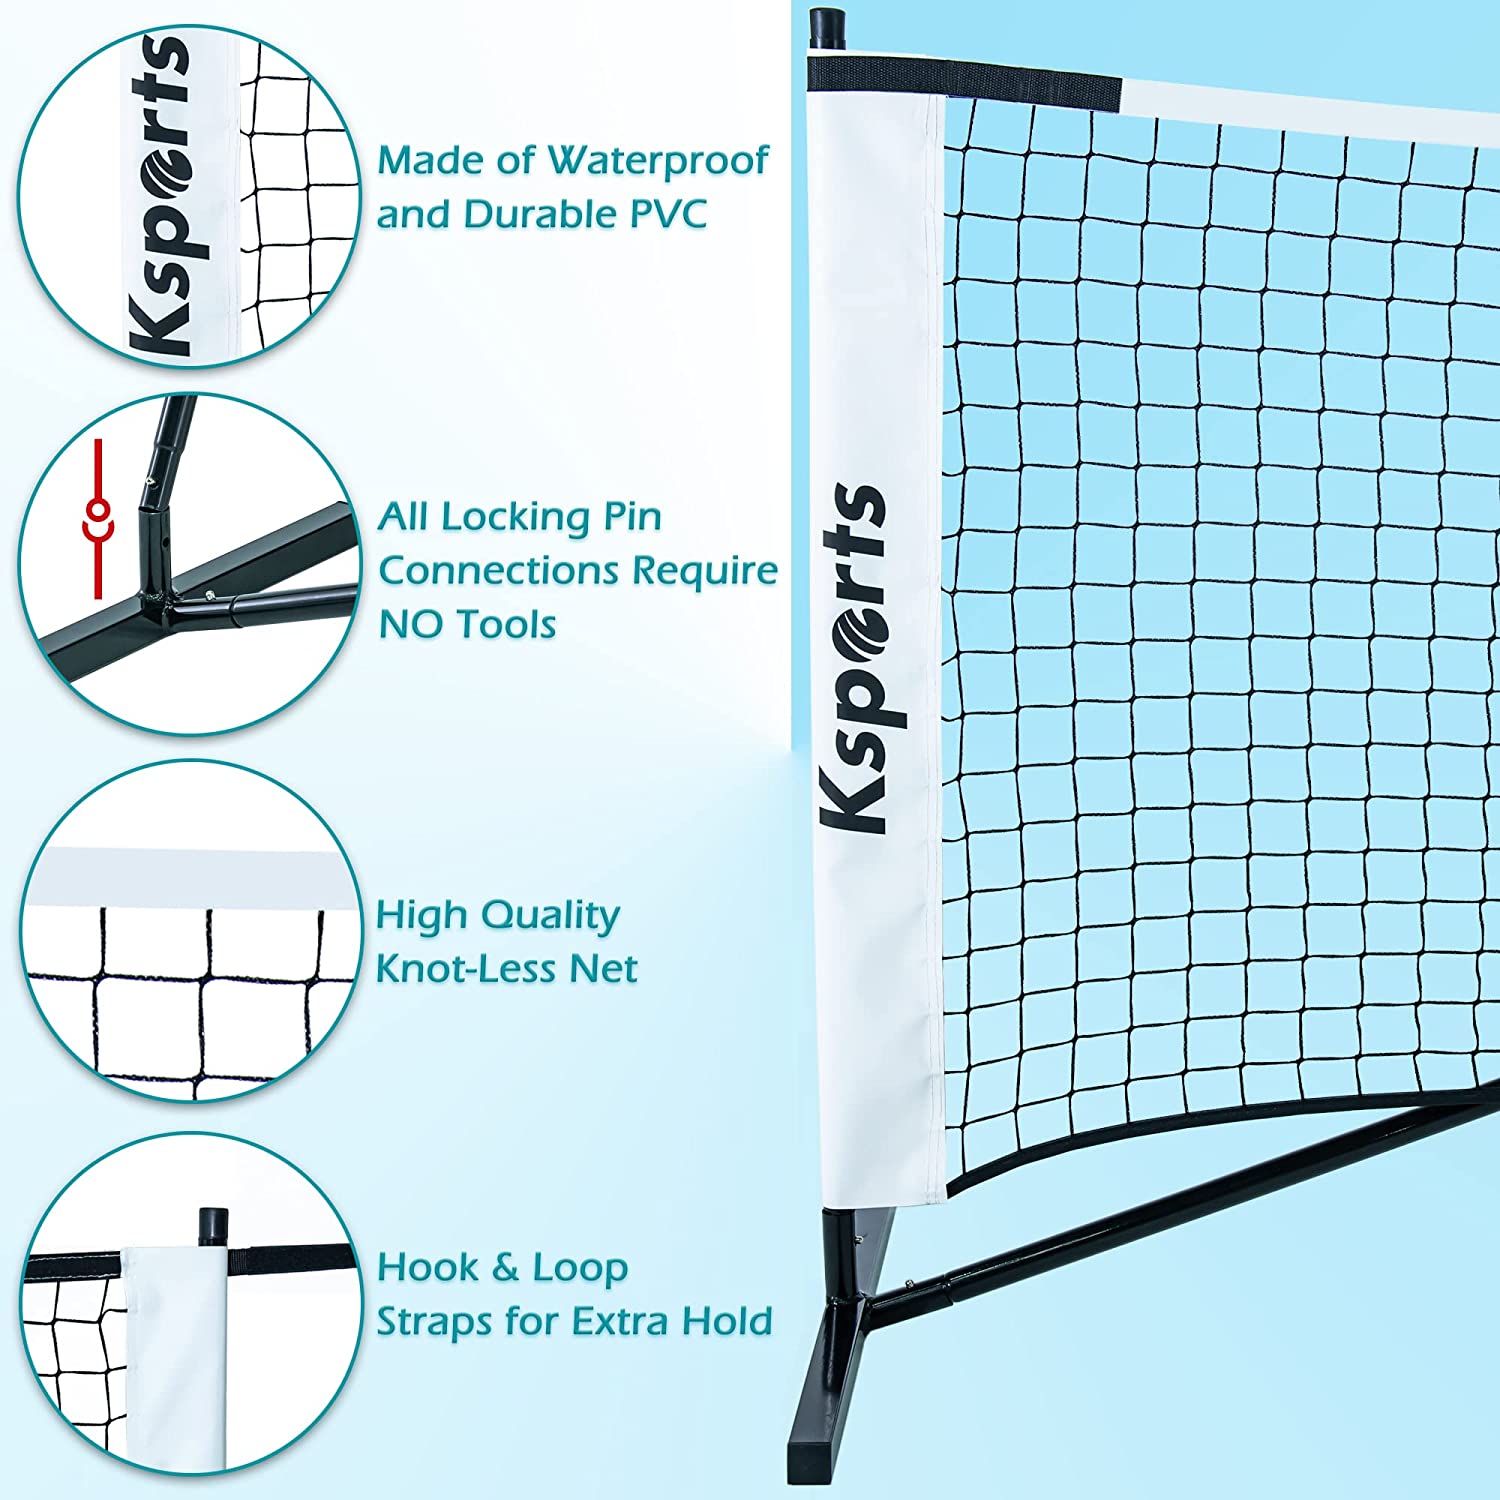 Ksports Regulation Size Pickleball Net 22 Feet White (KSU9001)